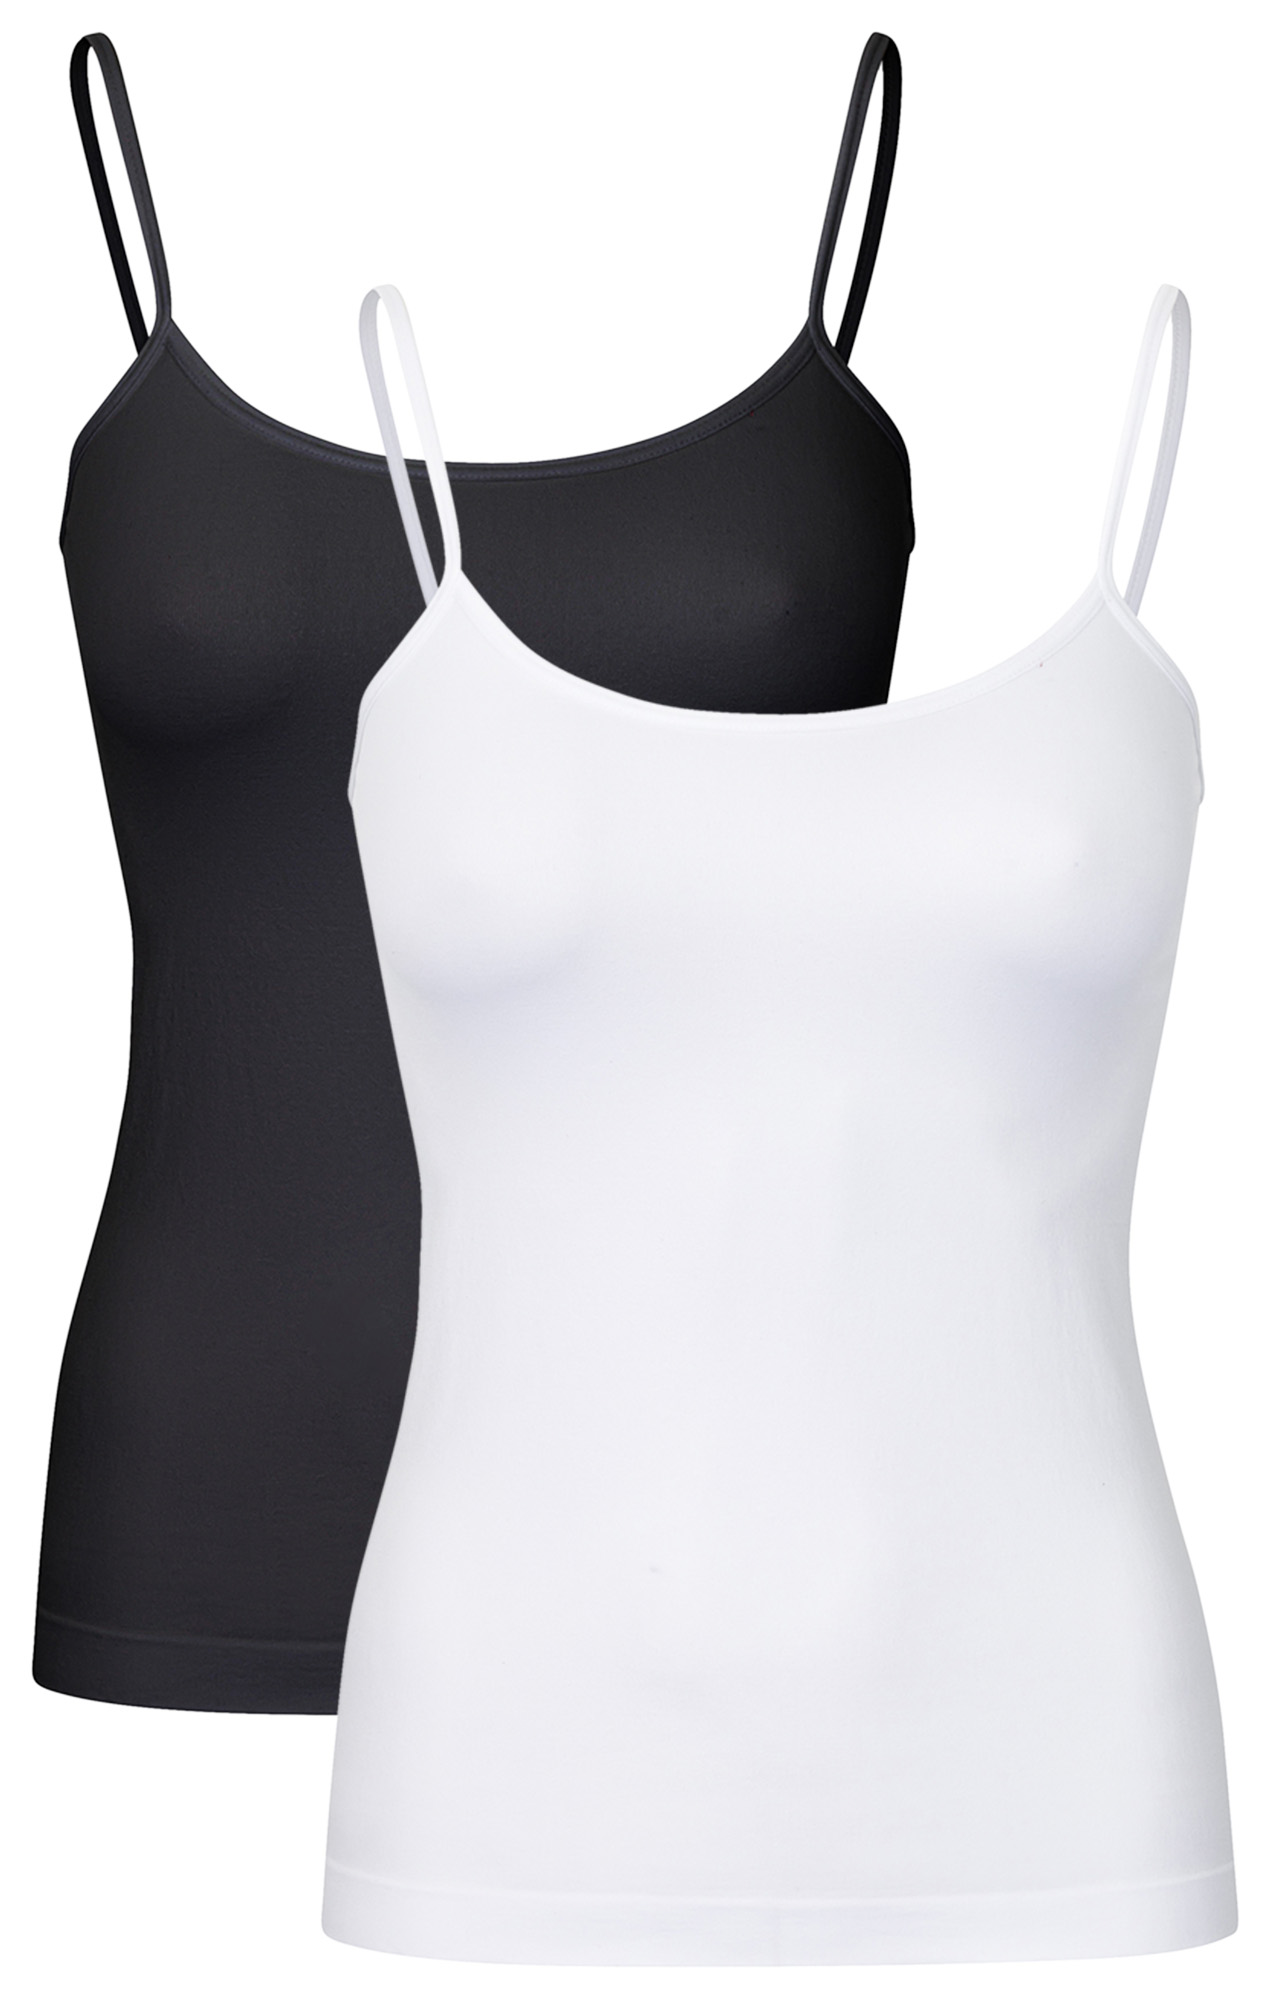 Damen Unterhemd & Panty Trägerhemd Microfaser Unterwäsche Set Top weiss